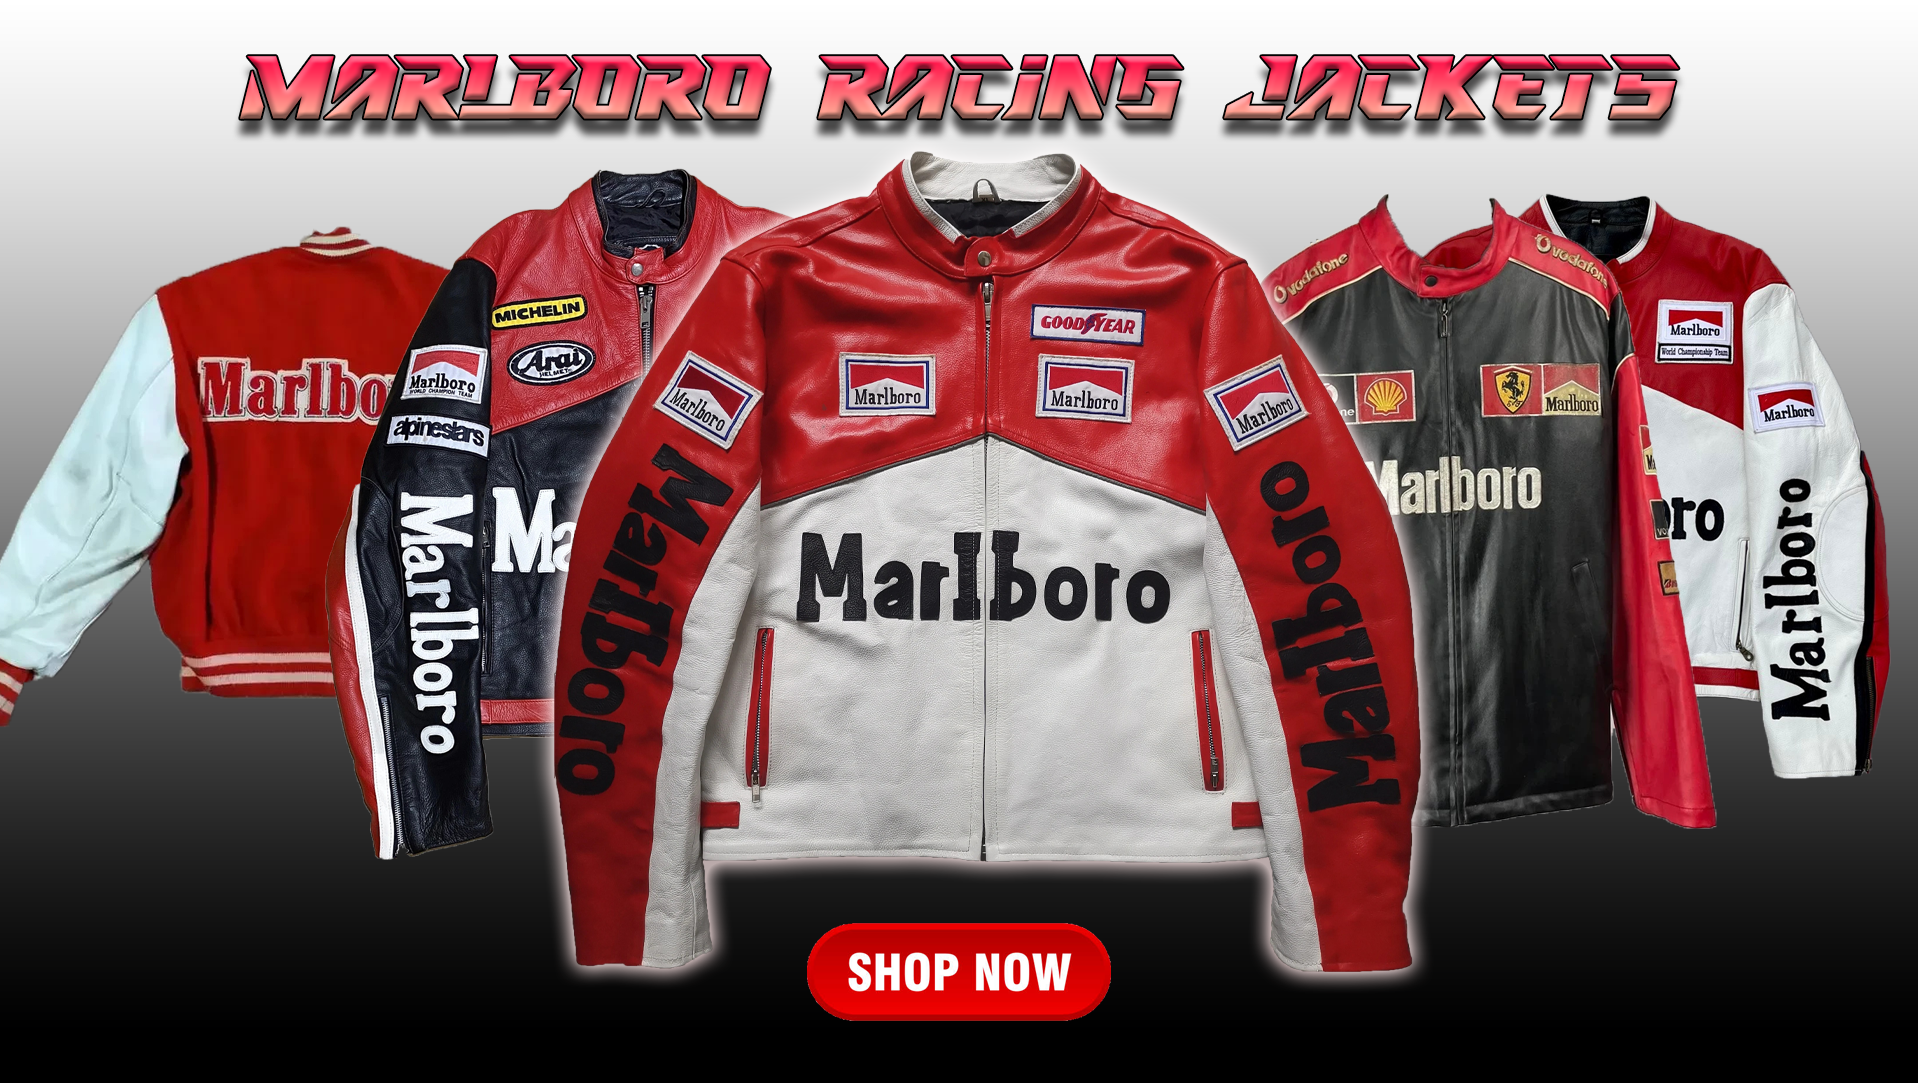 Marlboro Racing Jackets